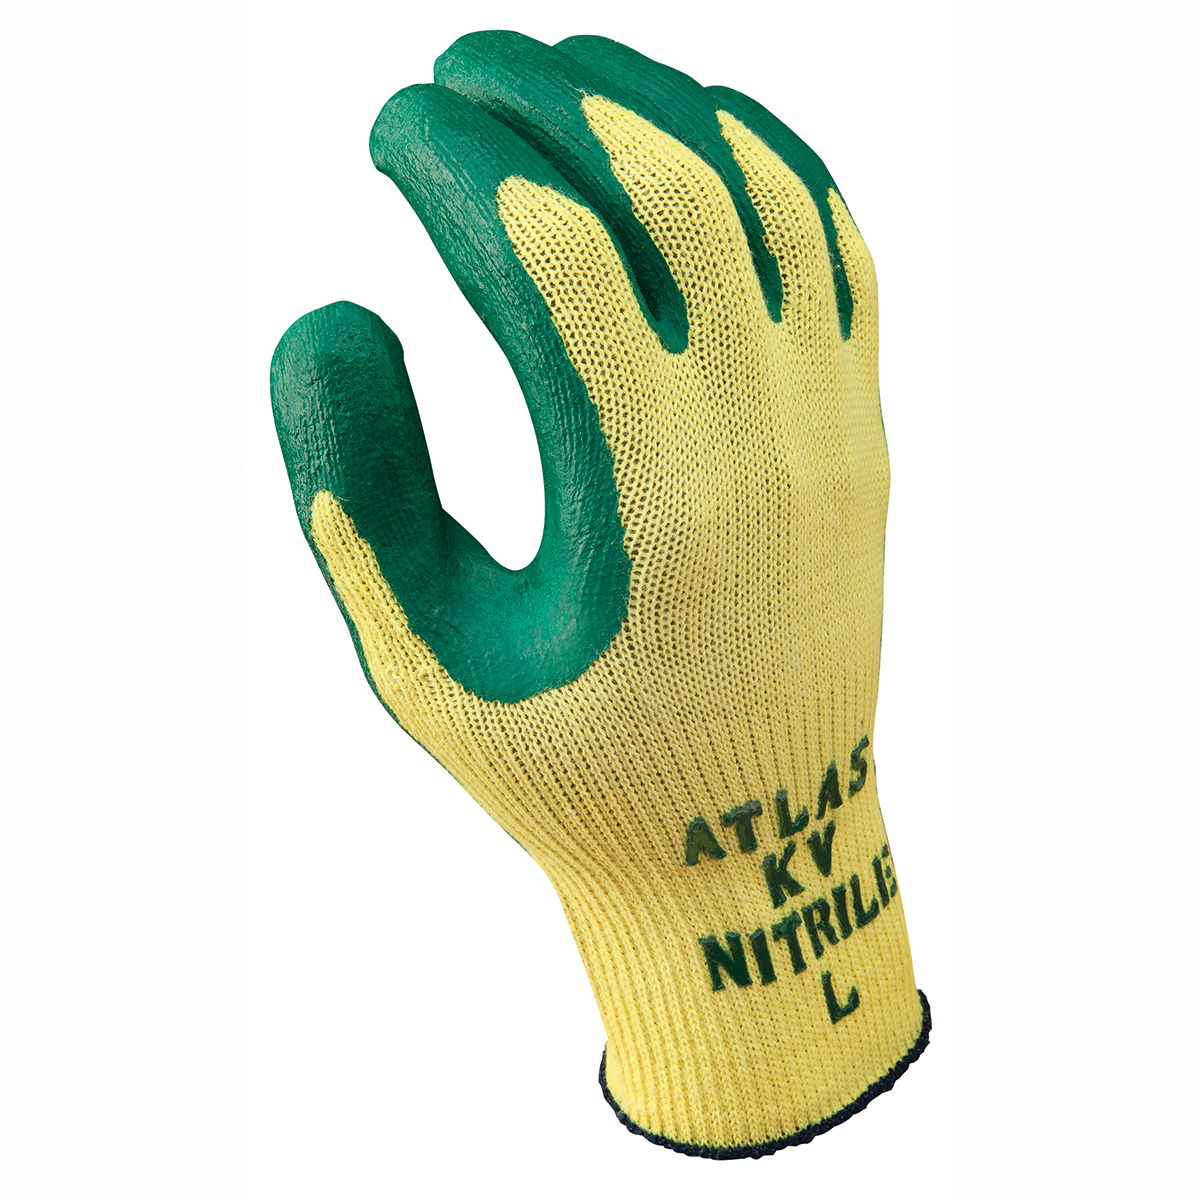 SHOWA® Size 10 ATLAS® KV350 10 Gauge DuPont™ Kevlar® Cut Resistant Gloves With Nitrile Coating